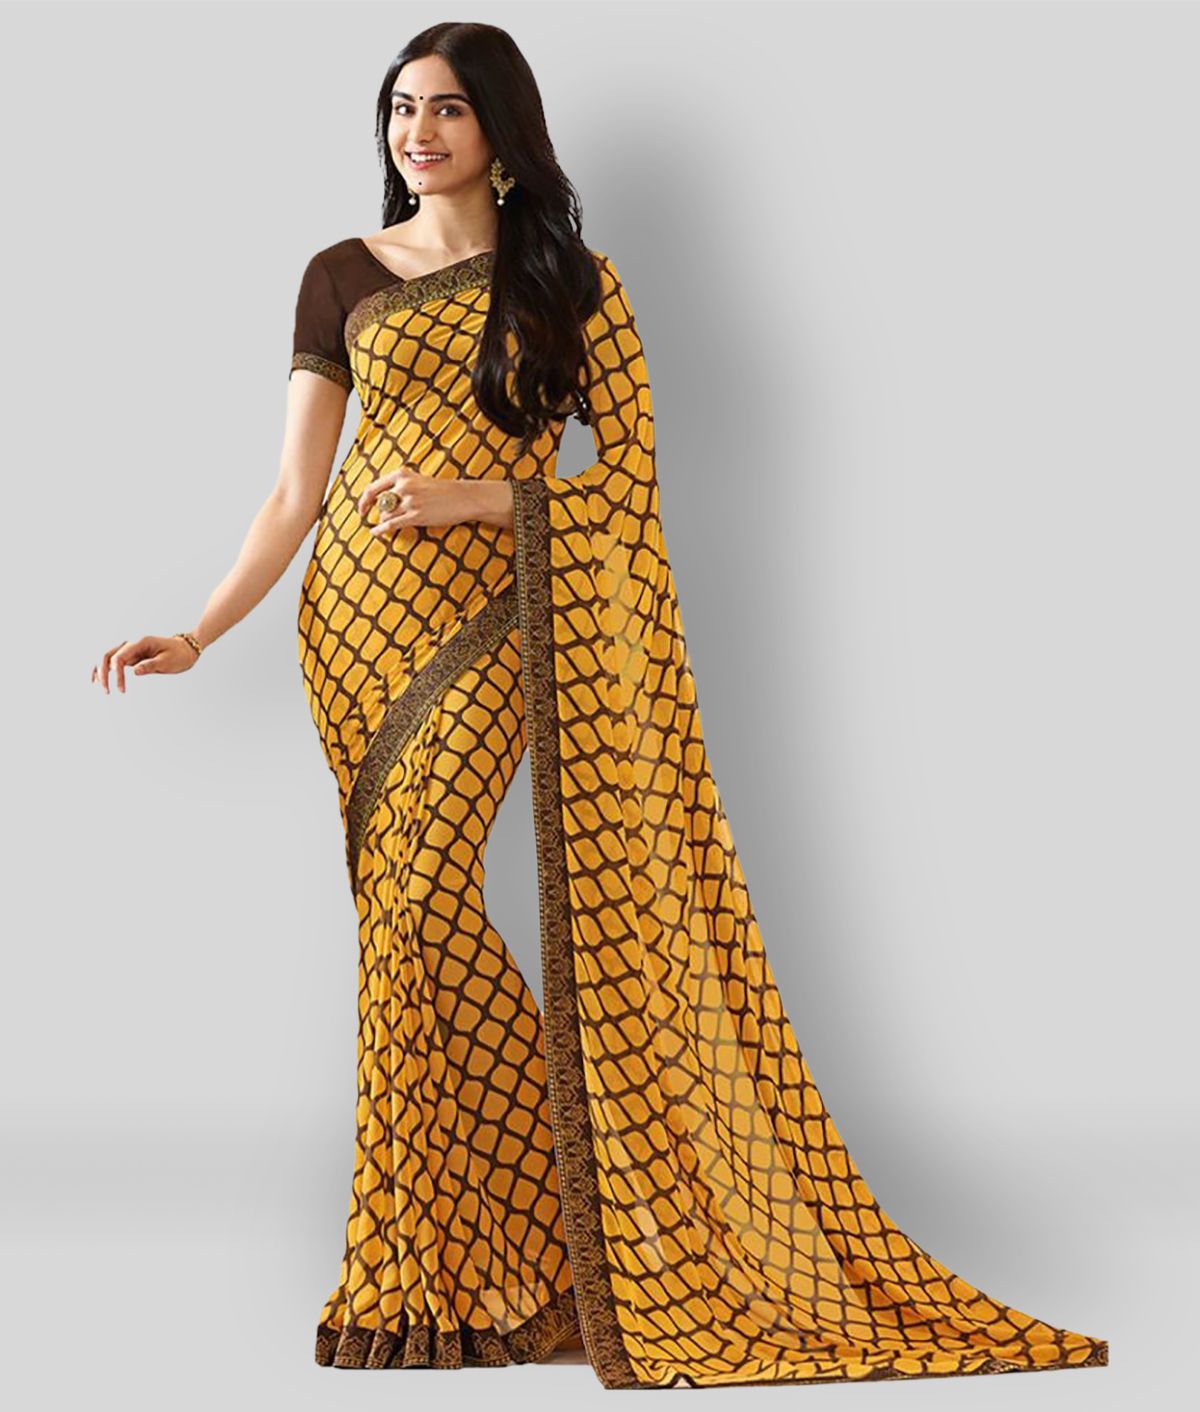     			Gazal Fashions - Yellow Chiffon Saree With Blouse Piece (Pack of 1)